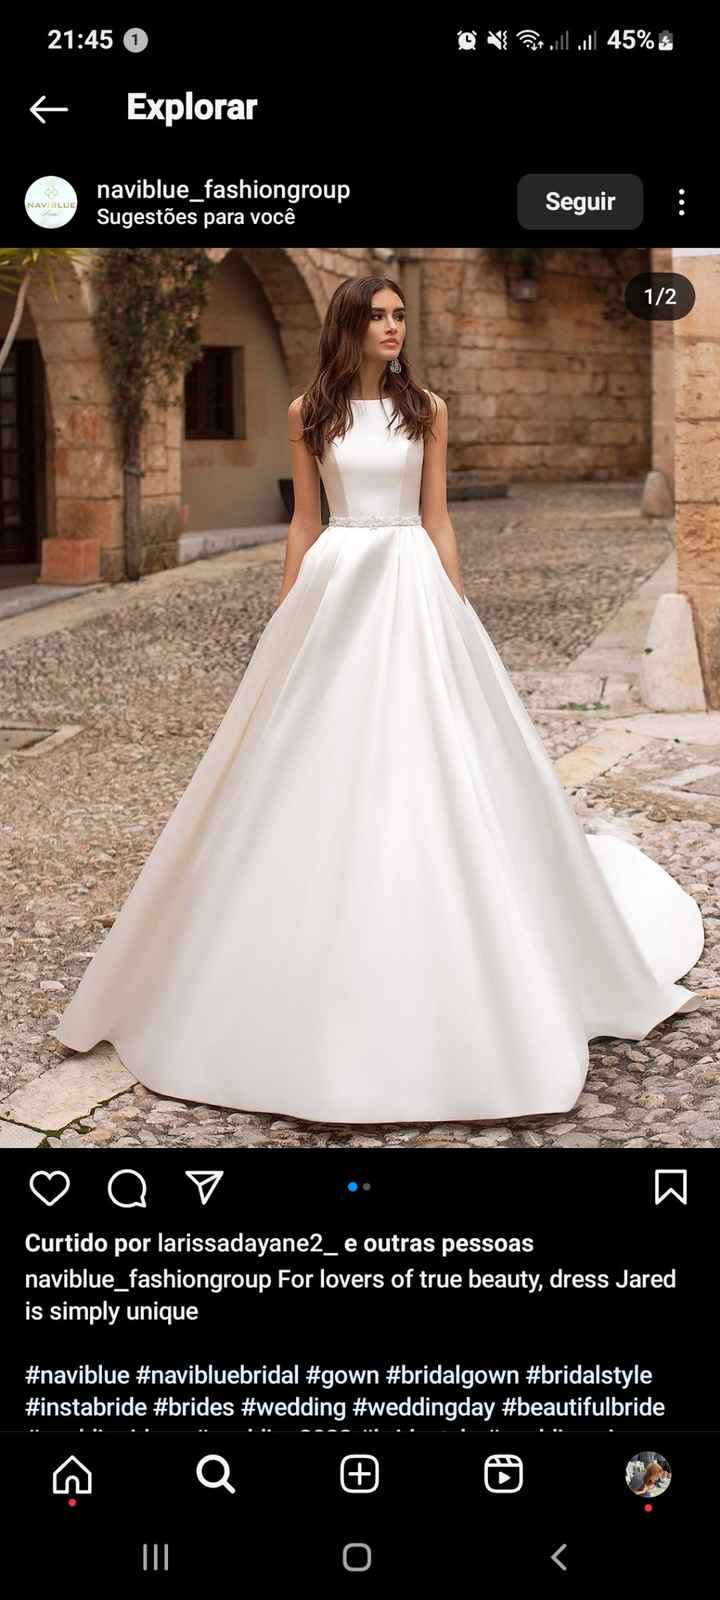 Qual melhor tecido adequado para vestido de noiva? - 1